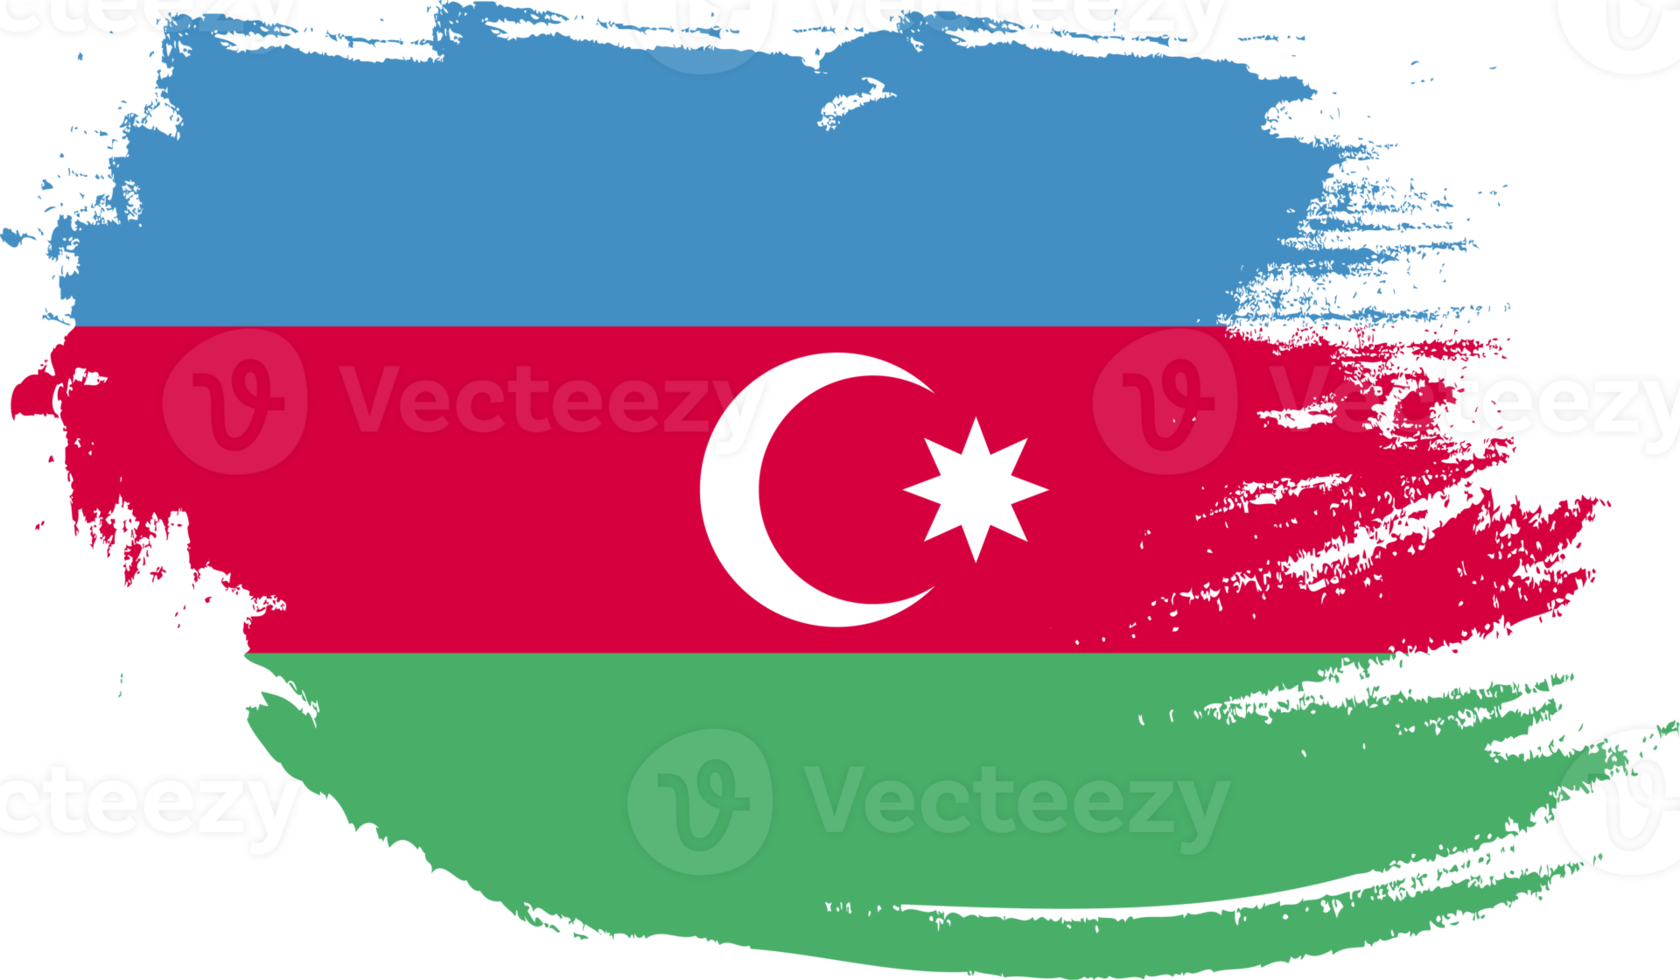 Aserbaidschan-Flagge mit Grunge-Textur png